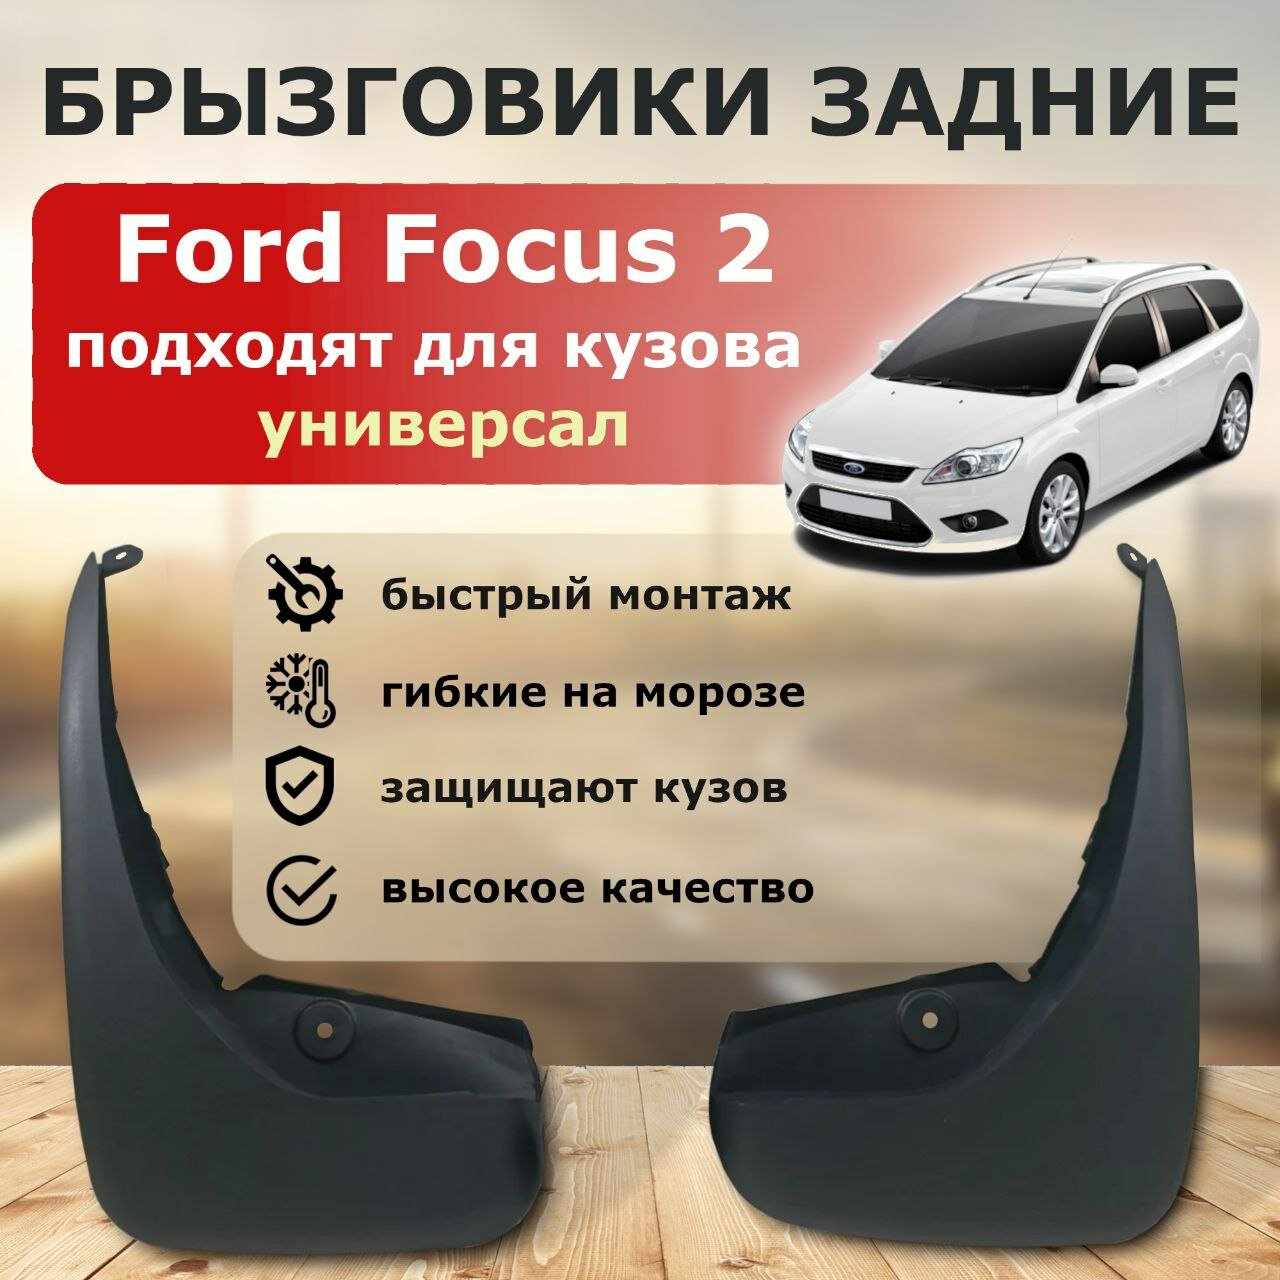 Задние брызговики для Ford Focus 2 универсал